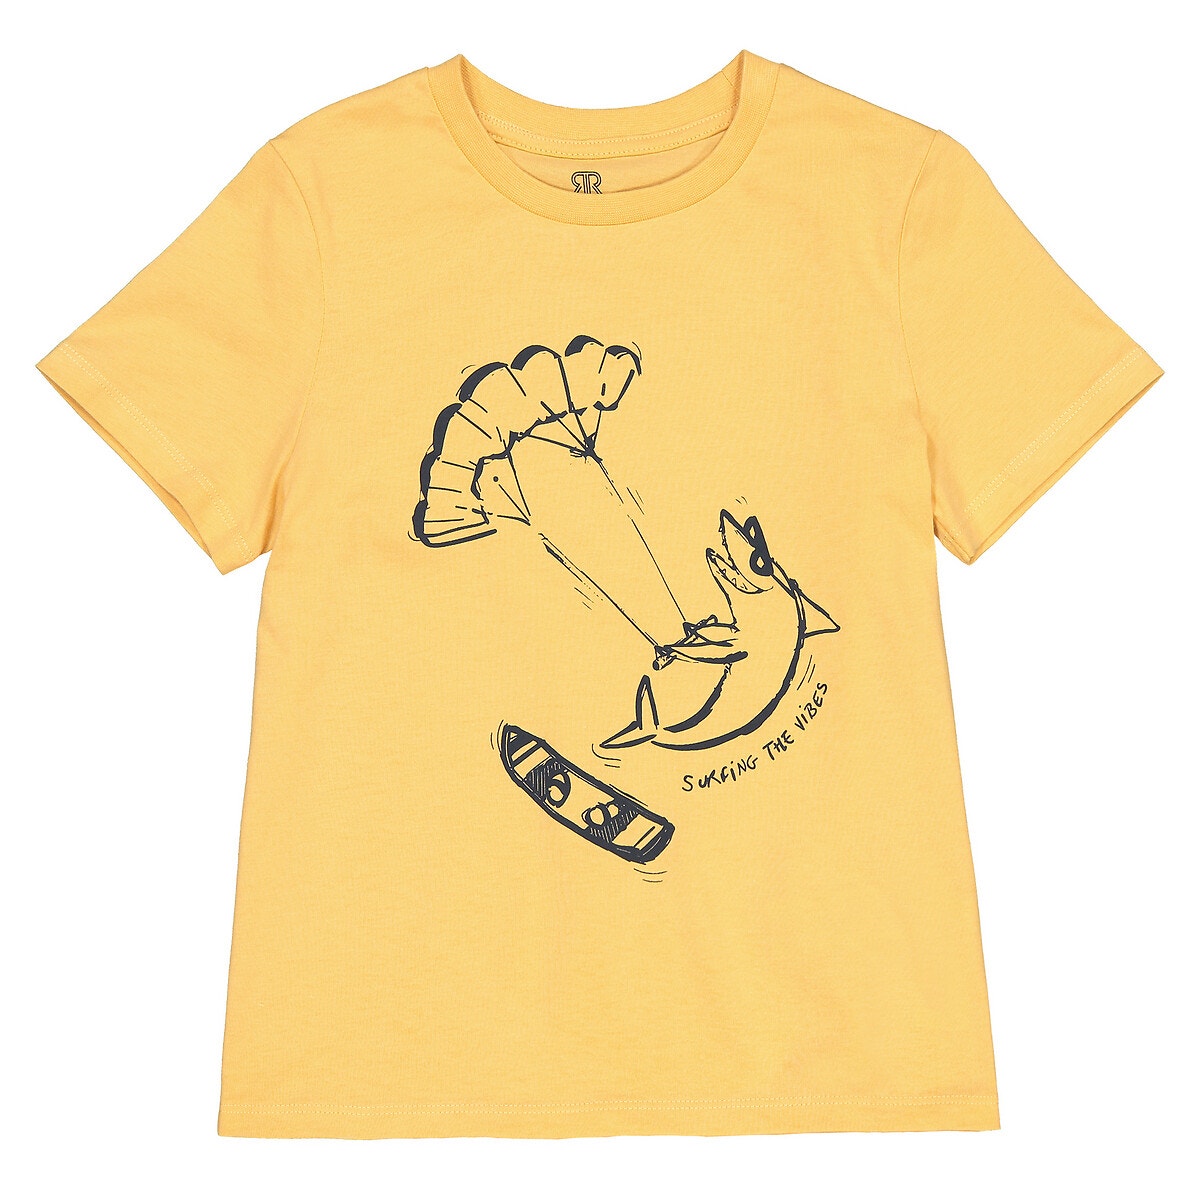 ΠΑΙΔΙ | Μπλούζες & Πουκάμισα | T-shirts Κοντομάνικο T-shirt με στάμπα μπροστά, 3-12 ετών